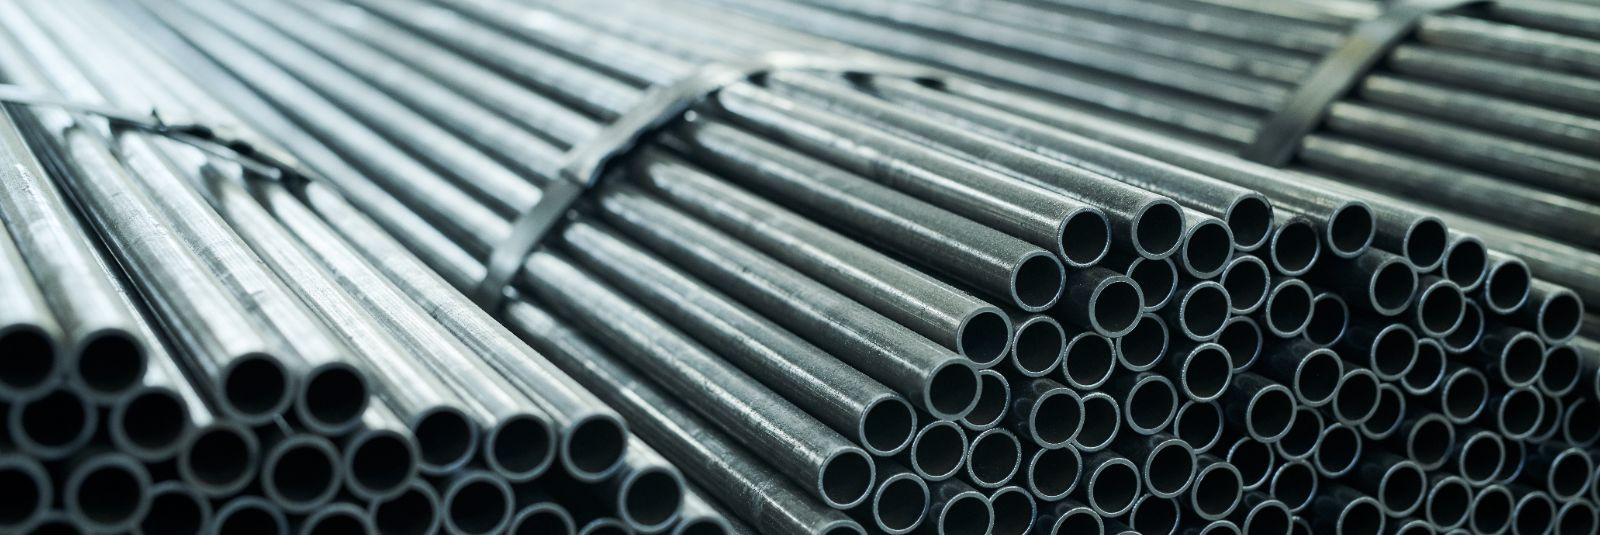 Metallitööd on lahutamatu osa tänapäeva tööstusmaailmast, ulatudes konstruktsioonidest kuni peensusteni, nagu keevitus ja kvaliteedikontroll. Tegemist on valdko